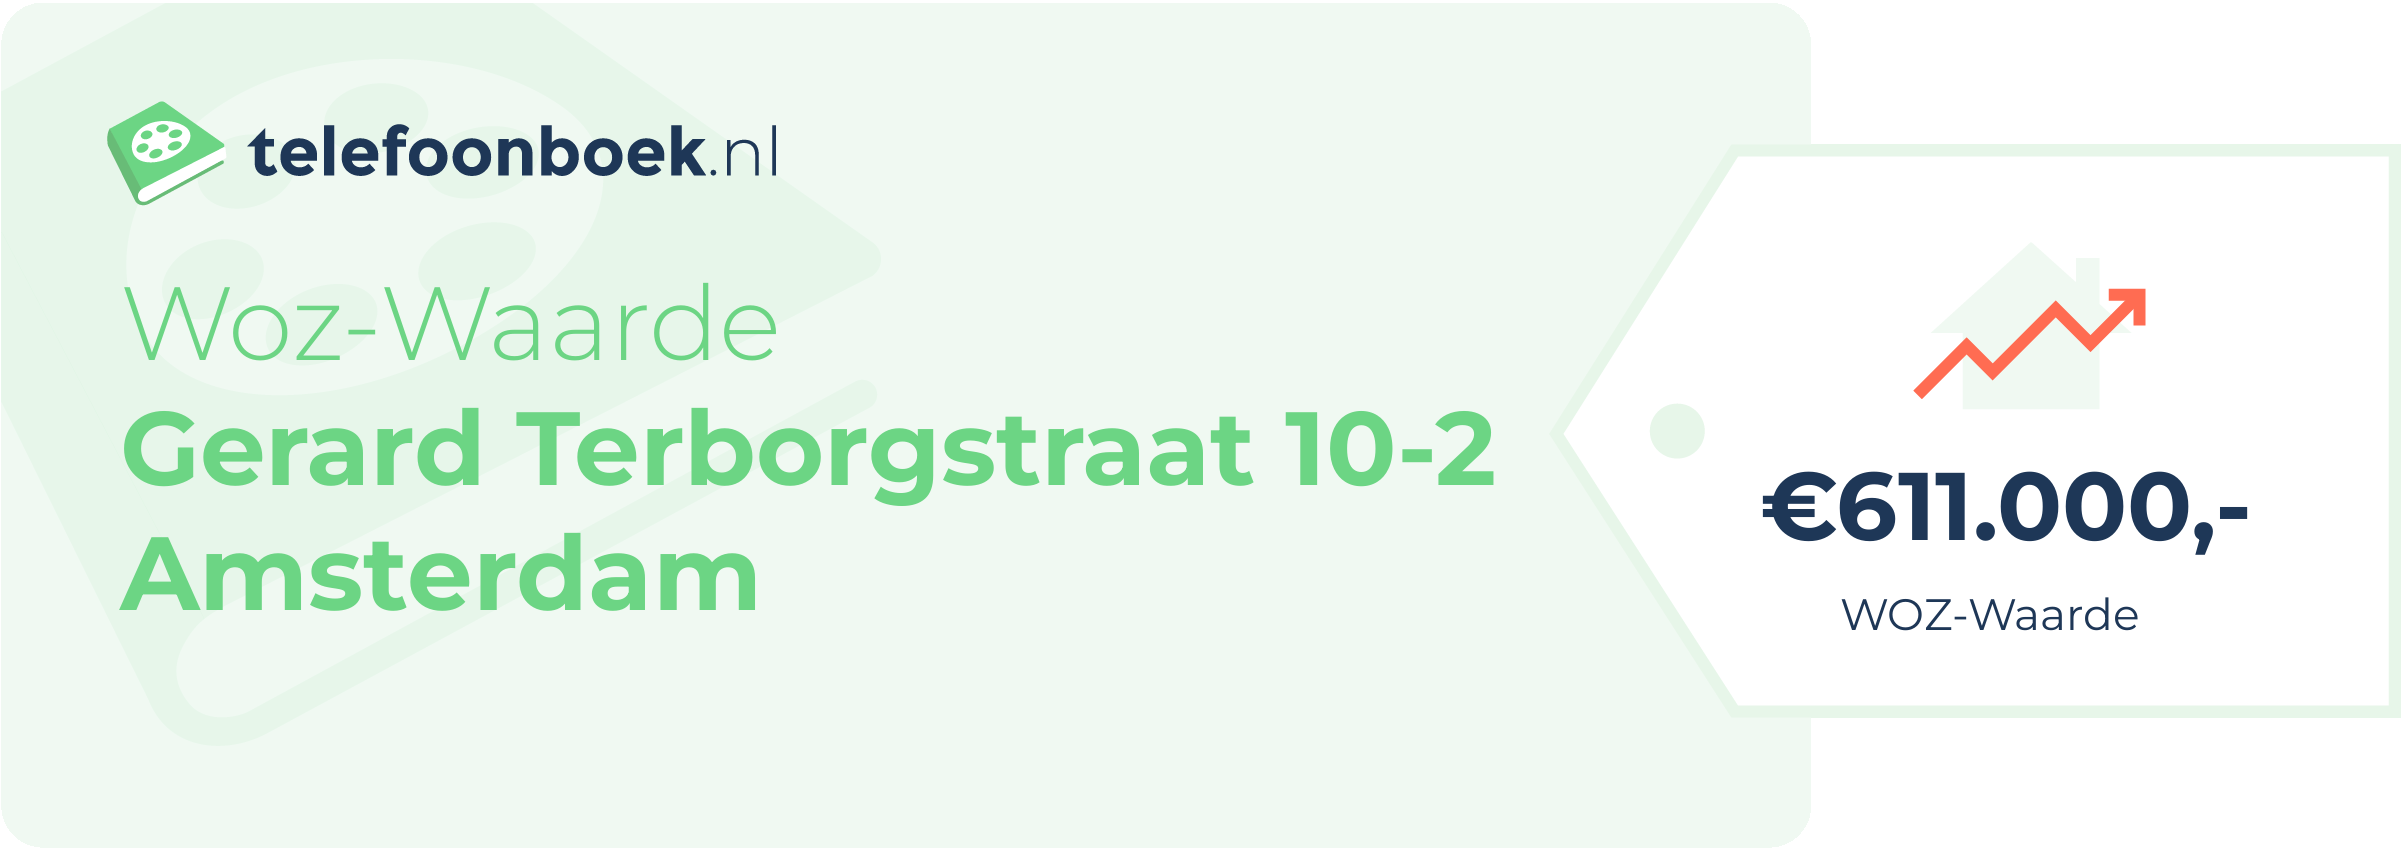 WOZ-waarde Gerard Terborgstraat 10-2 Amsterdam